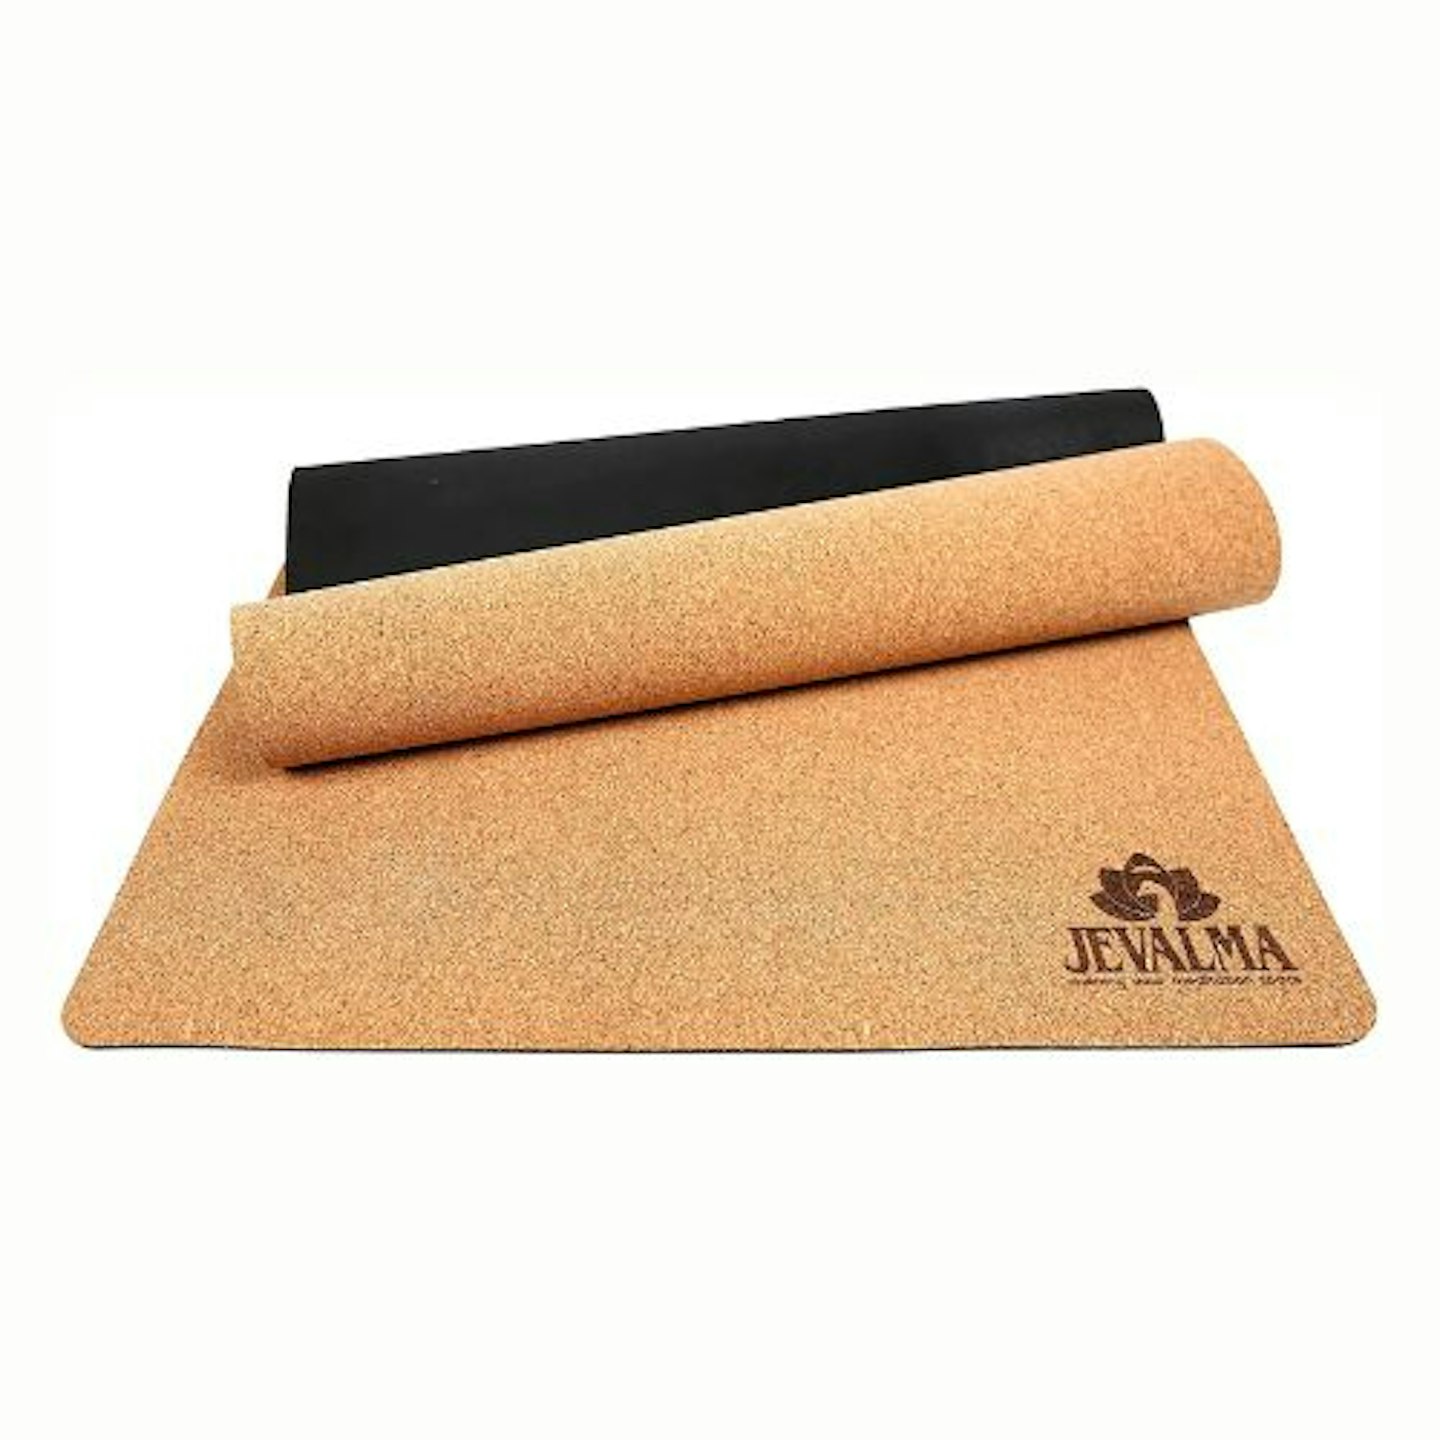  Mantra Cork Yoga Mat - Best Yoga Mat for Non Slip